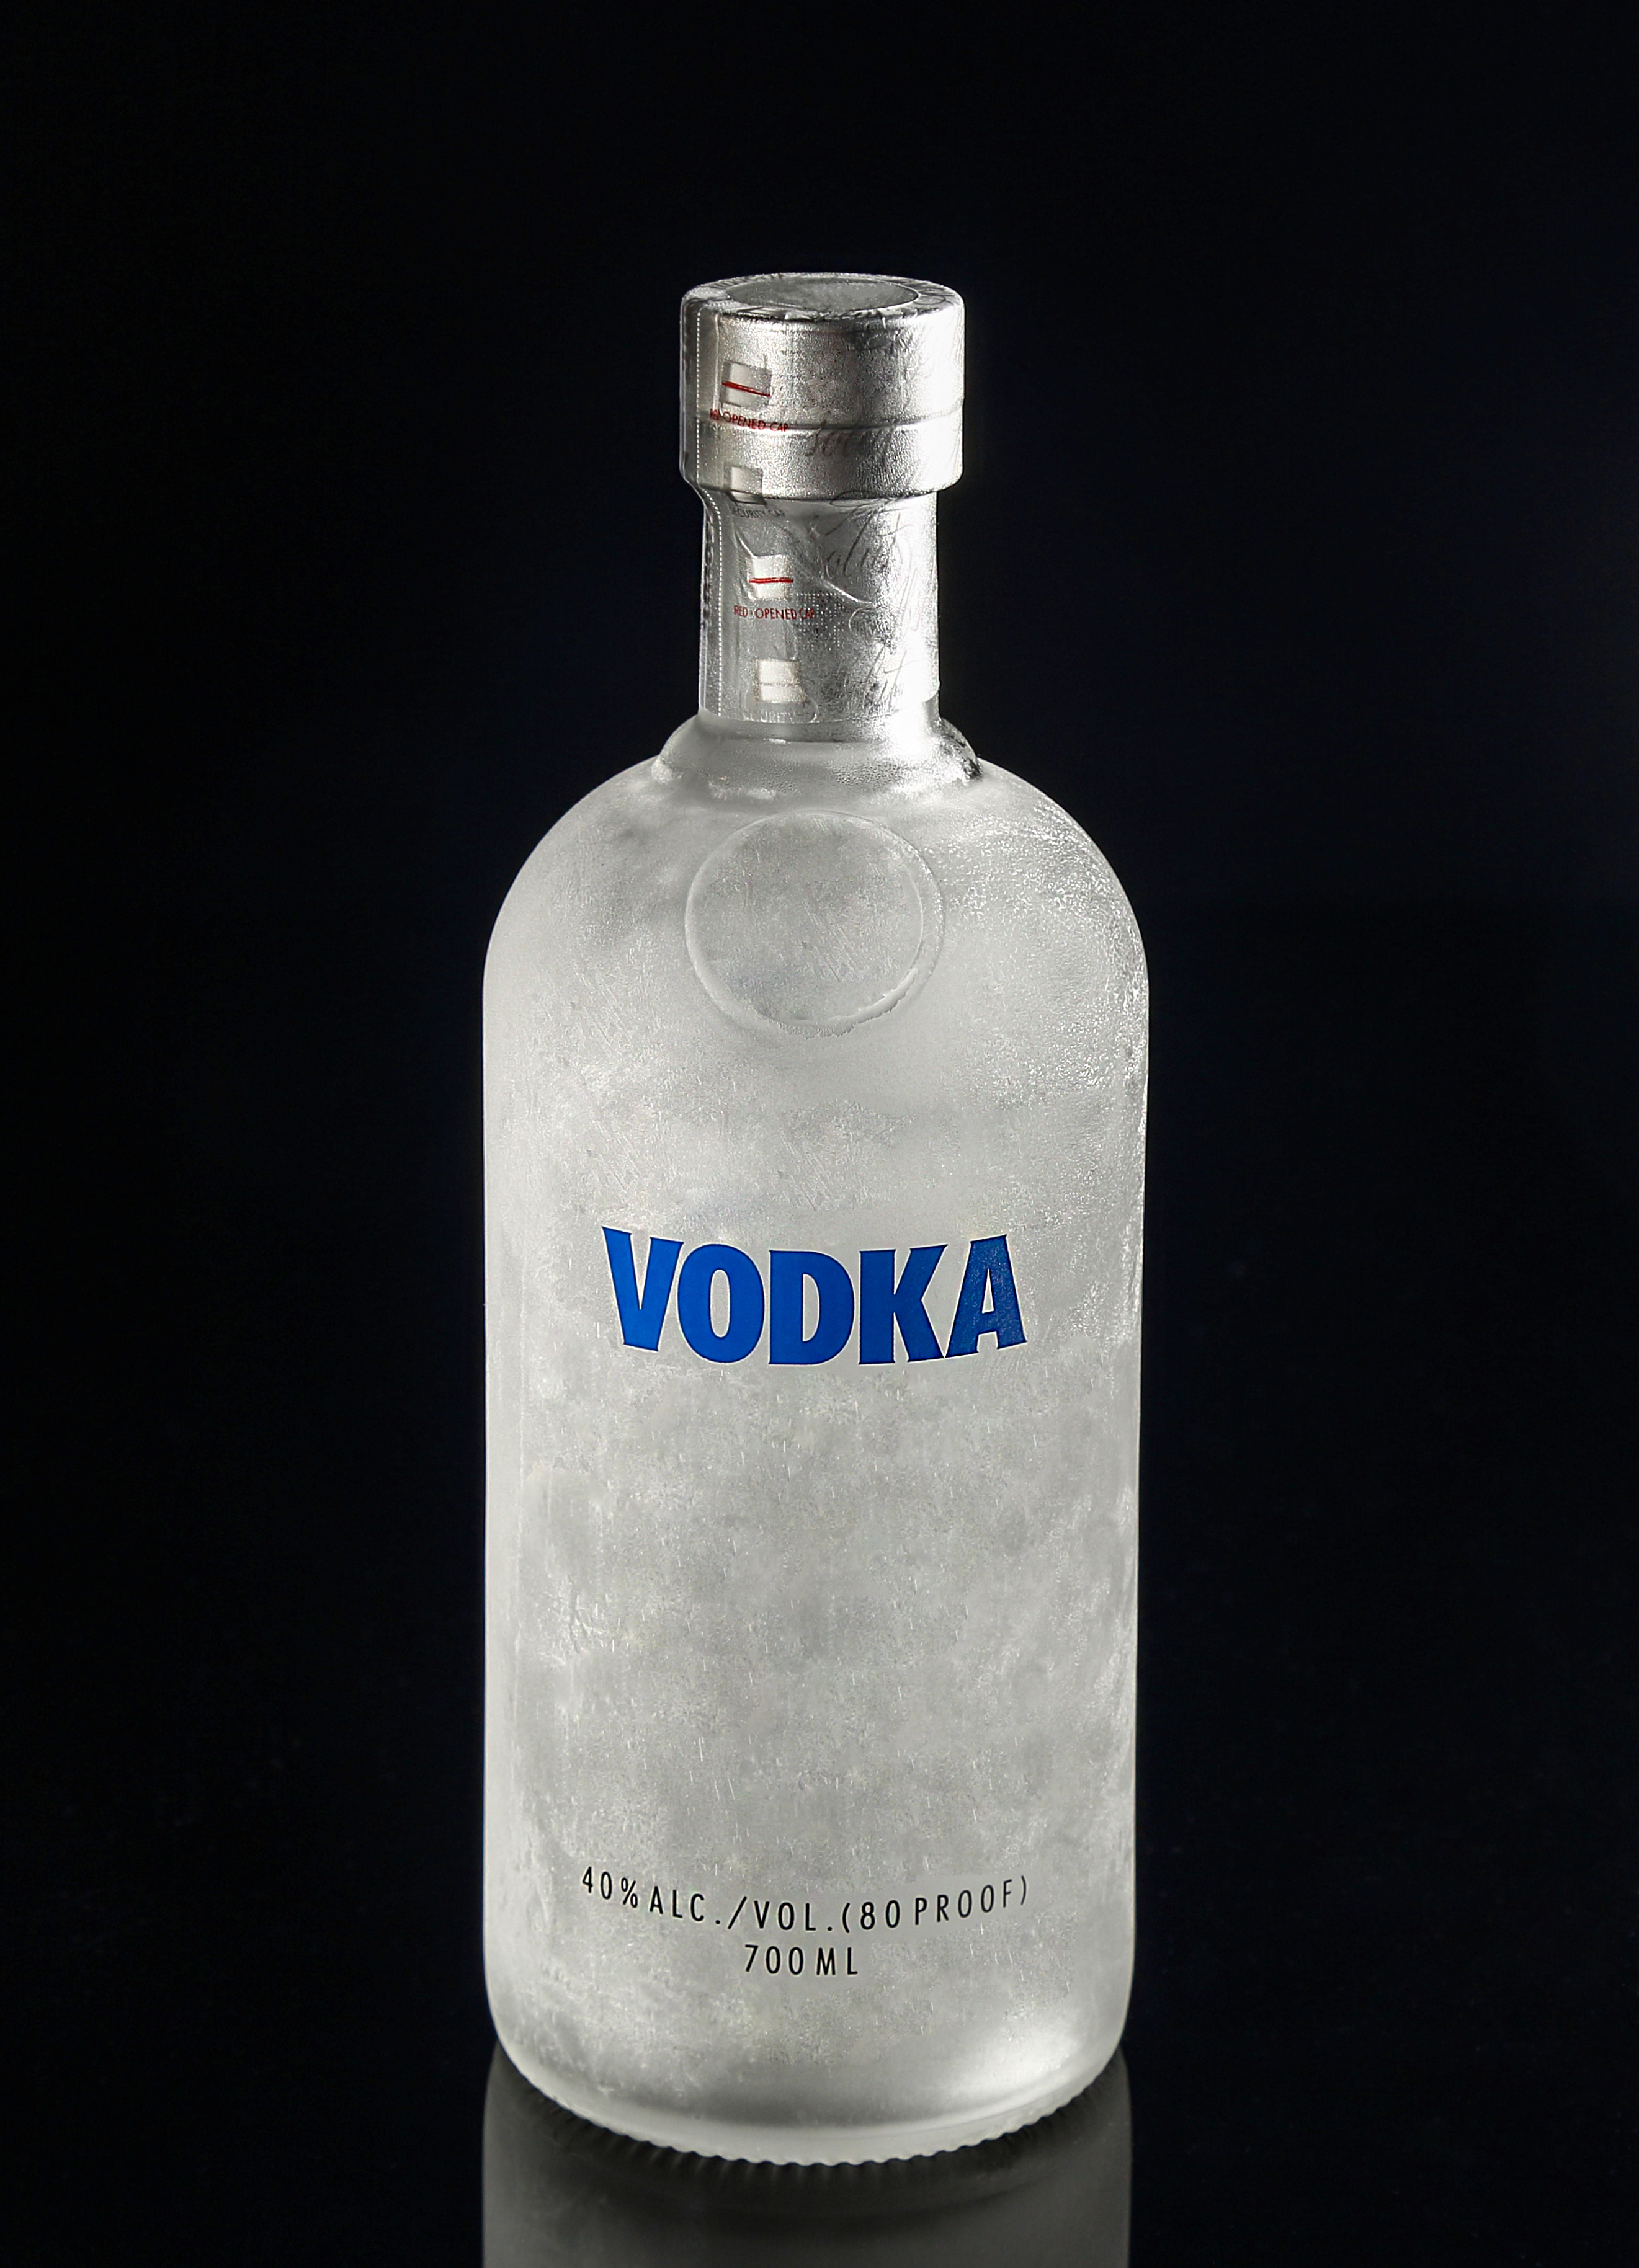 Eine Flasche Wodka | Quelle: Shutterstock